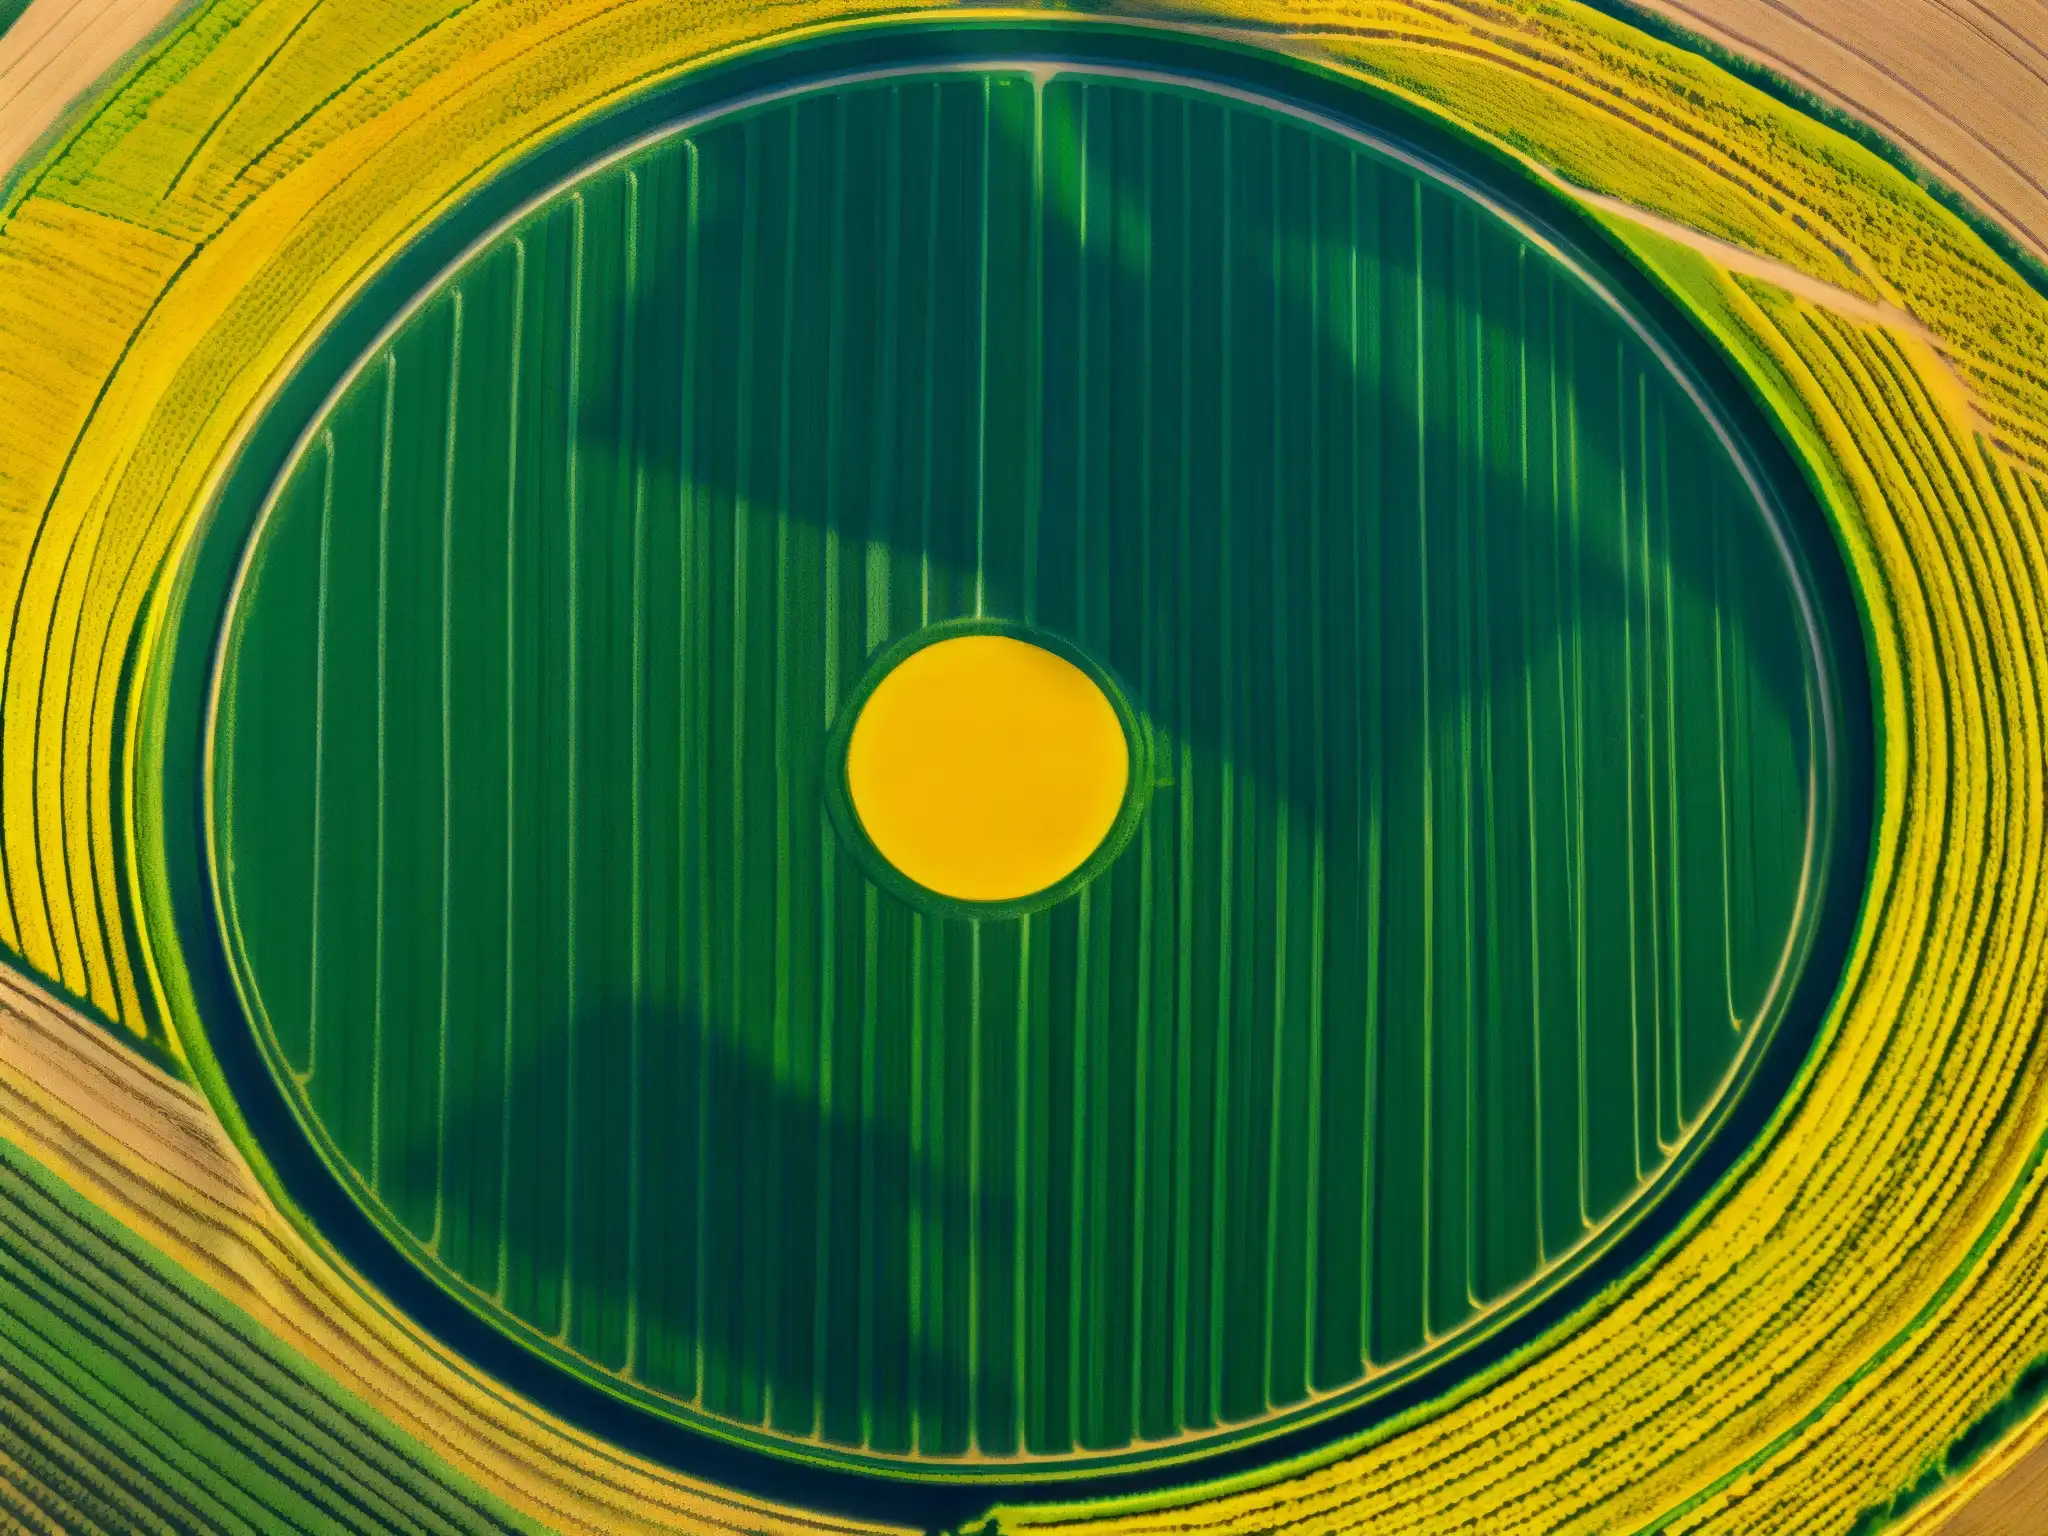 Campo de trigo con fenómeno círculos cosechas mensajes extraterrestres, patrones geométricos en la luz del sol de la mañana